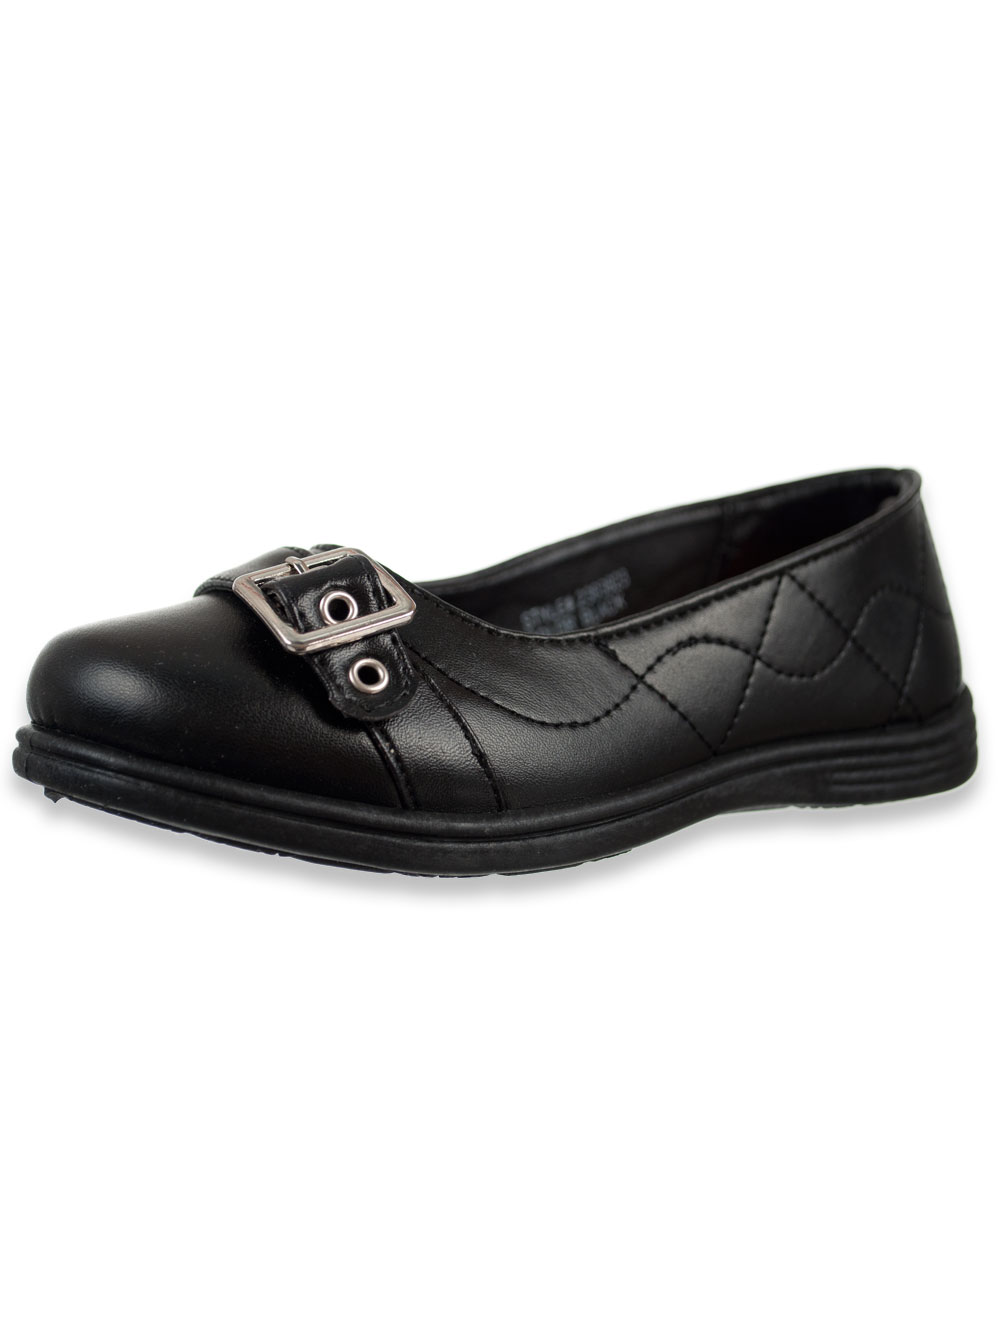 infant size 7 black school shoes